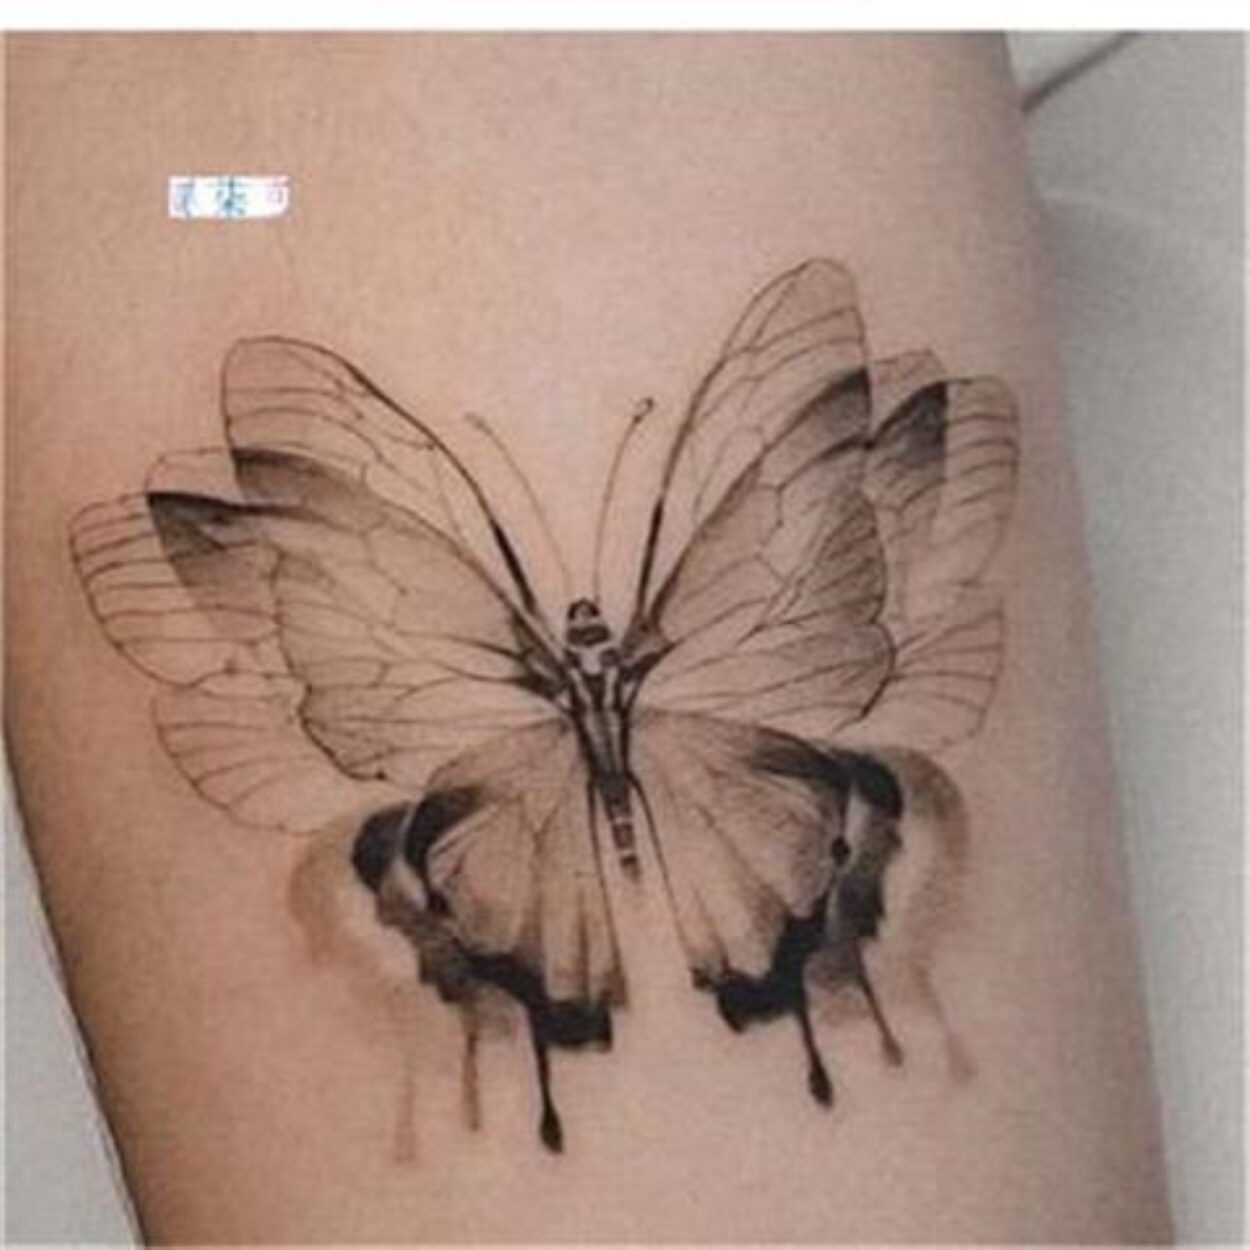 Nevertheless và ý nghĩa hình xăm bươm bướm của badboy Park Jaeeon  TRẦN  HƯNG ĐẠO